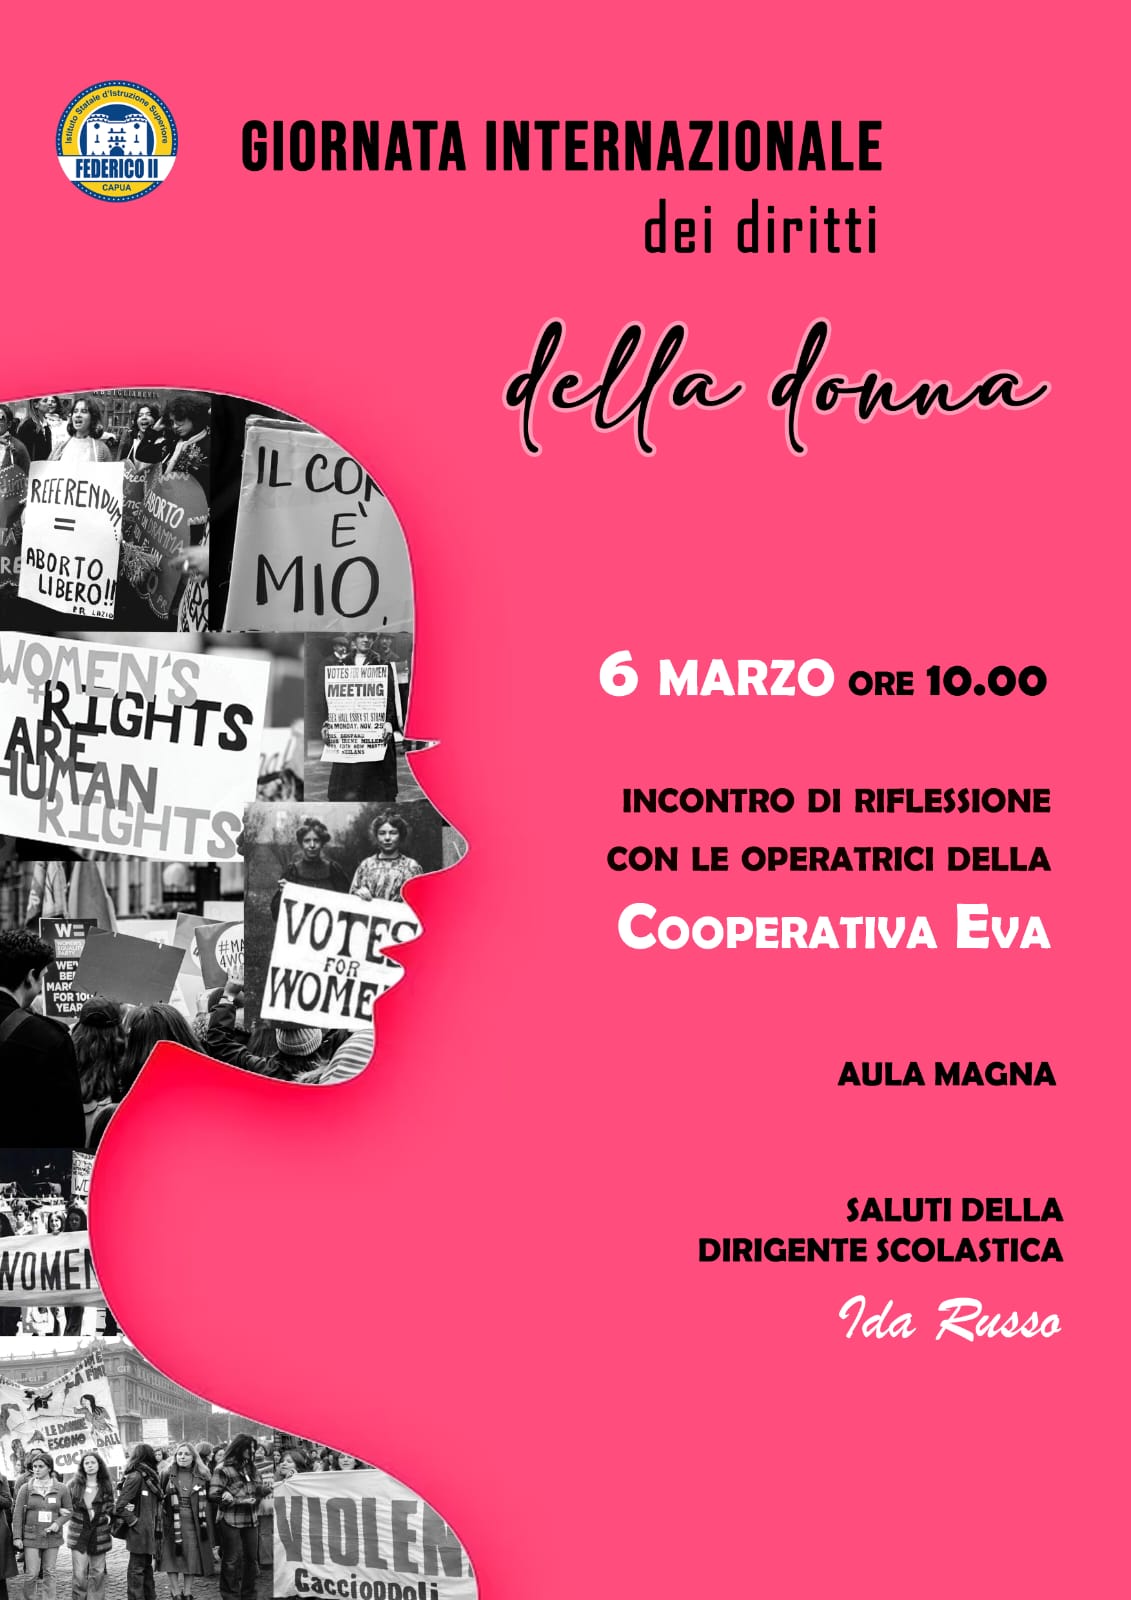 Giornata internazionale dei diritti della donna  - Incontro con le operatrici della Cooperativa EVA - 6 MARZO 2023